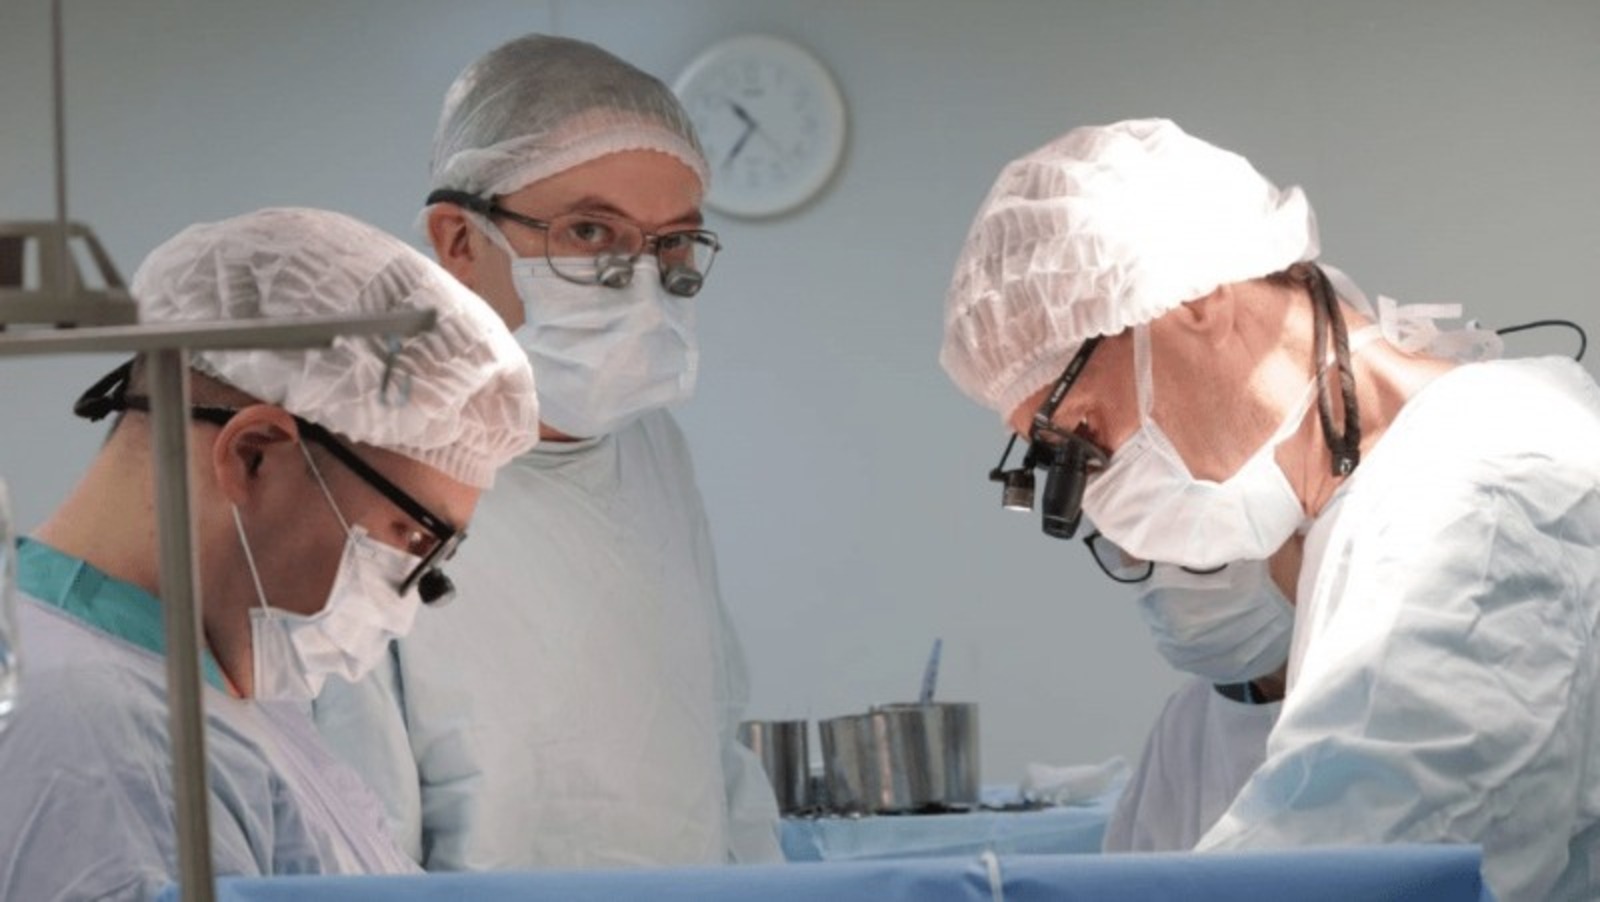 Операция, которую проводили кардиологи жителю Башкирии, длилась более пяти часов